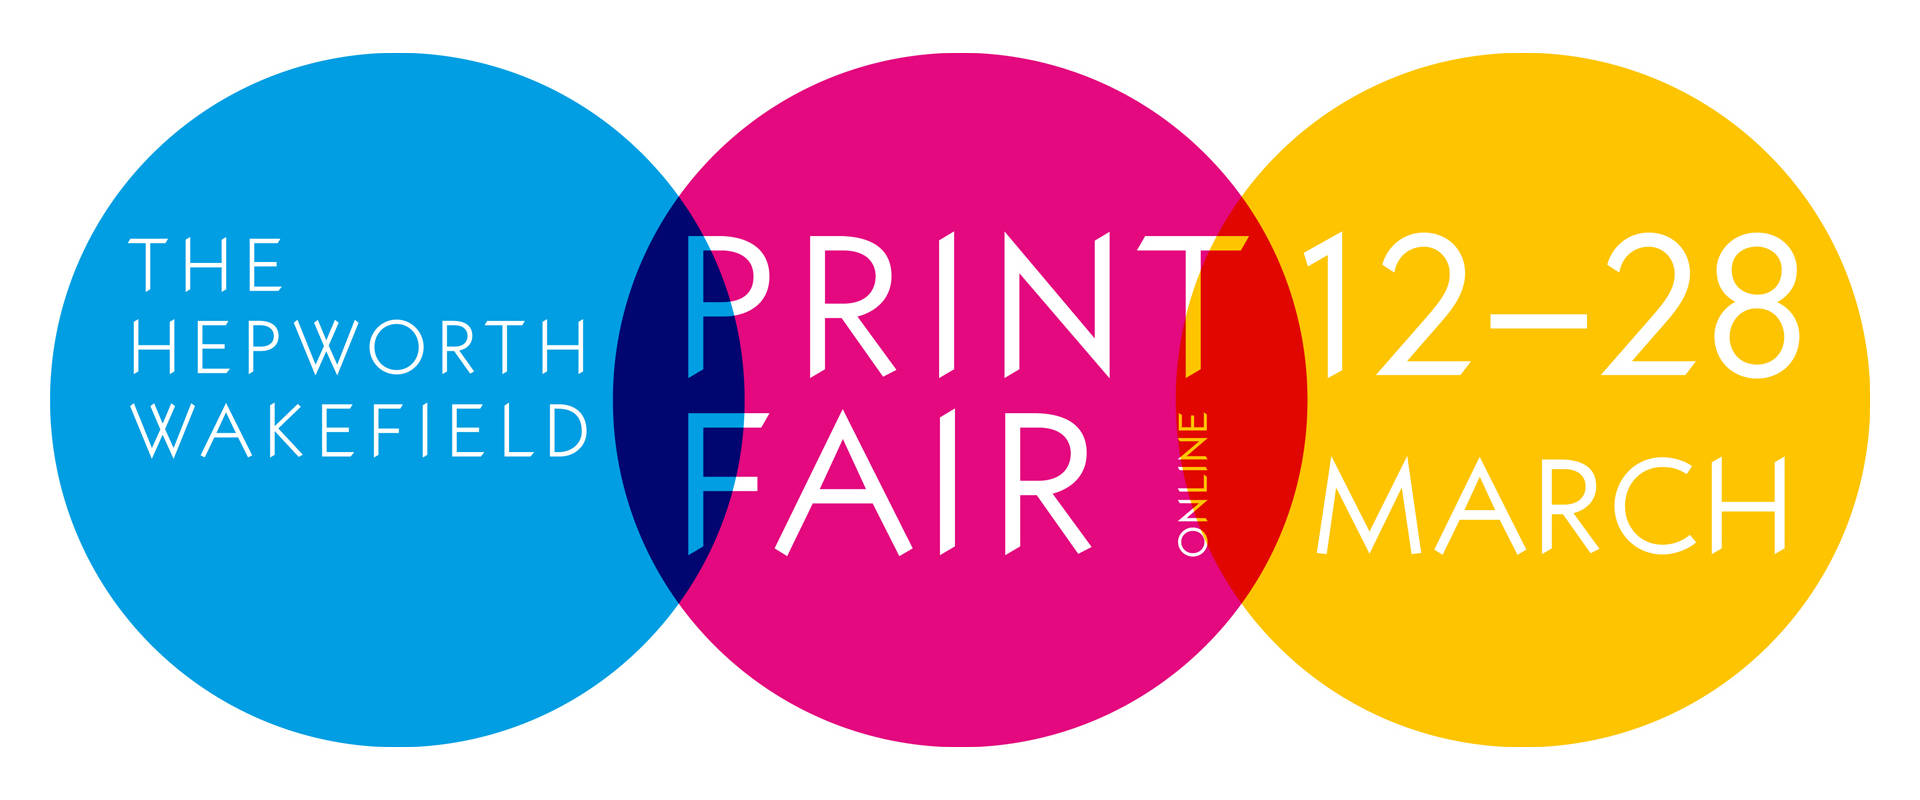 Hepworth Wakefield Print Fair 2021